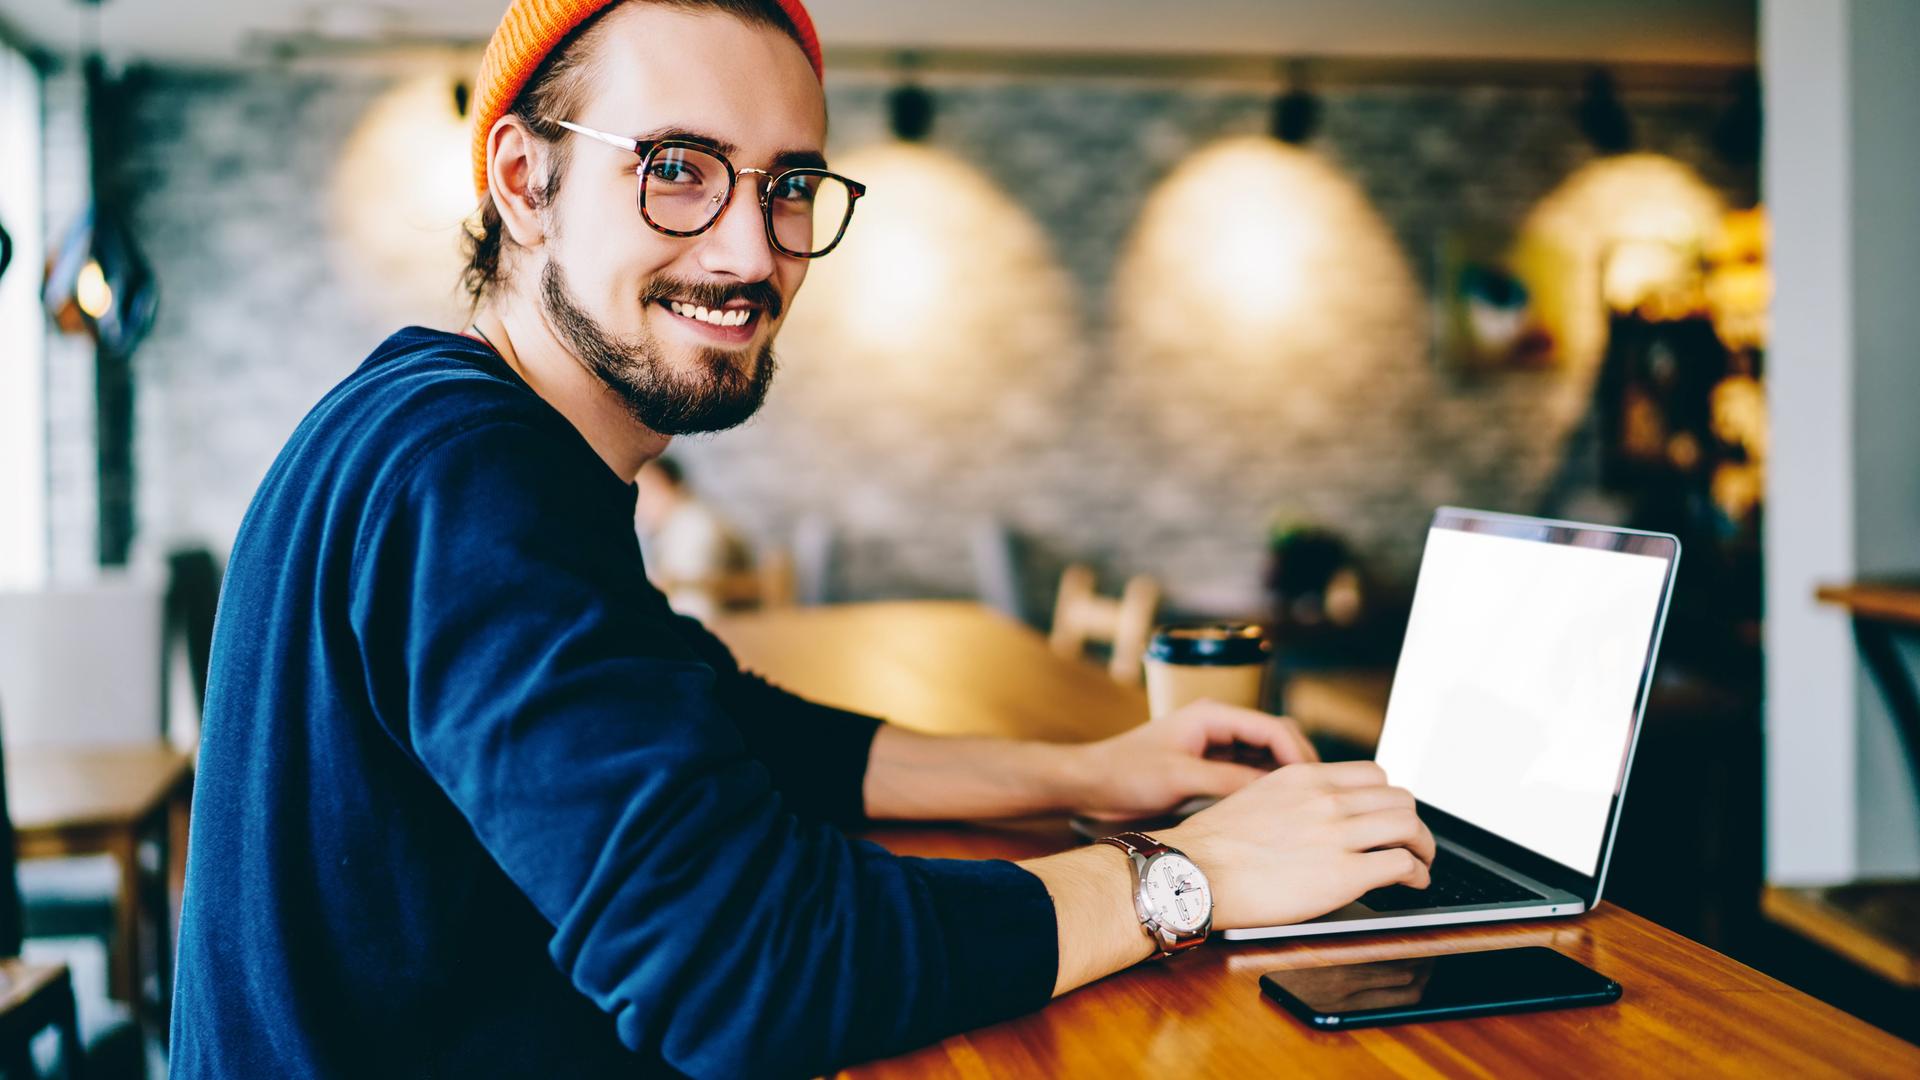 Junger Mann mit Brille und Mütze guckt lächelnd in die Kamera. Er ist in einem Cafe und auf dem Tisch vor ihm ist ein Laptop und ein Smartphone.